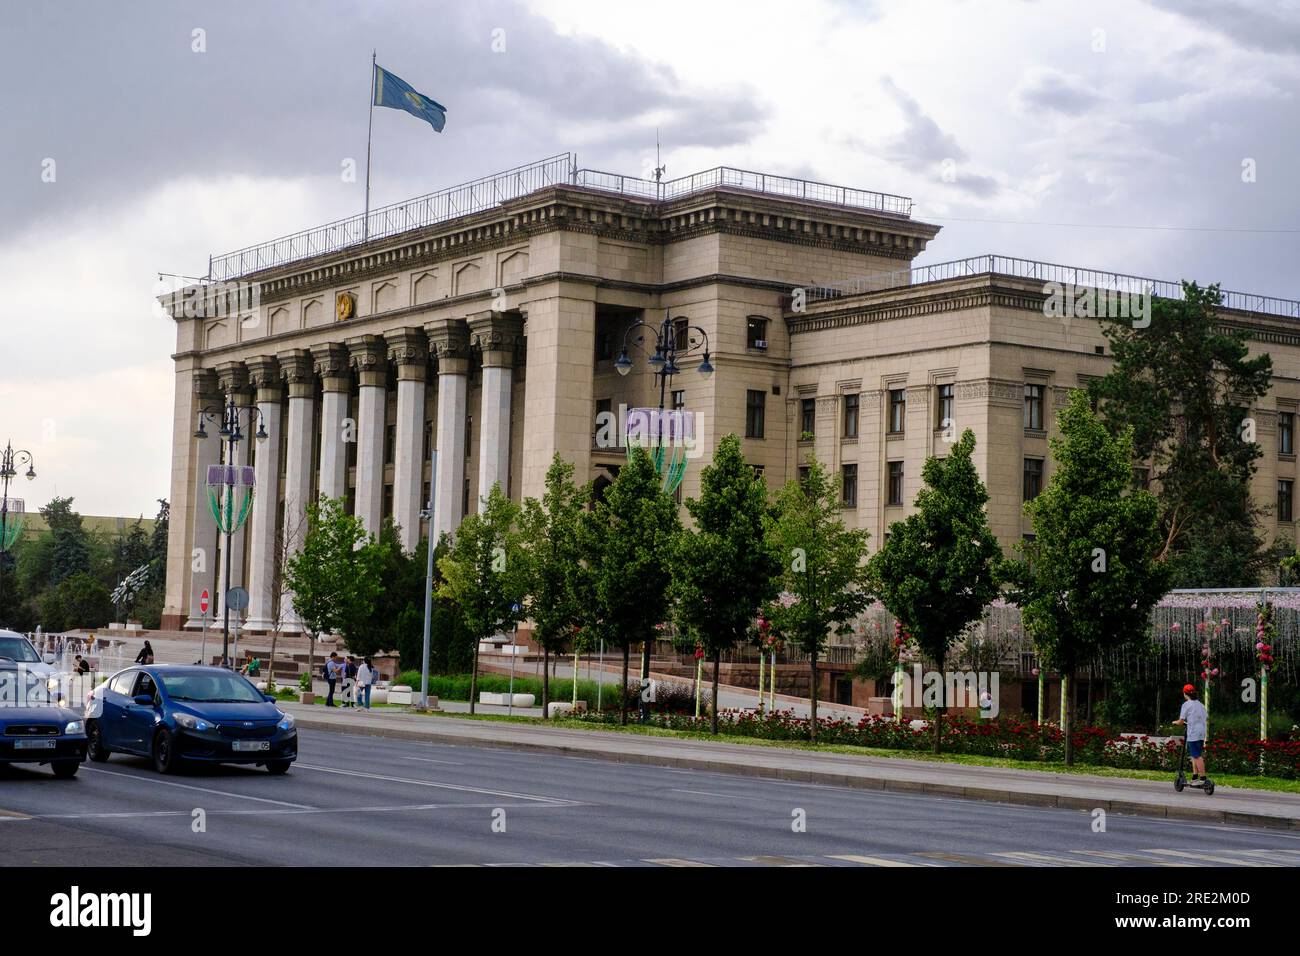 Kazakhstan, Almaty. Université technique kazakhe-britannique, anciennement bâtiment du gouvernement soviétique. Banque D'Images